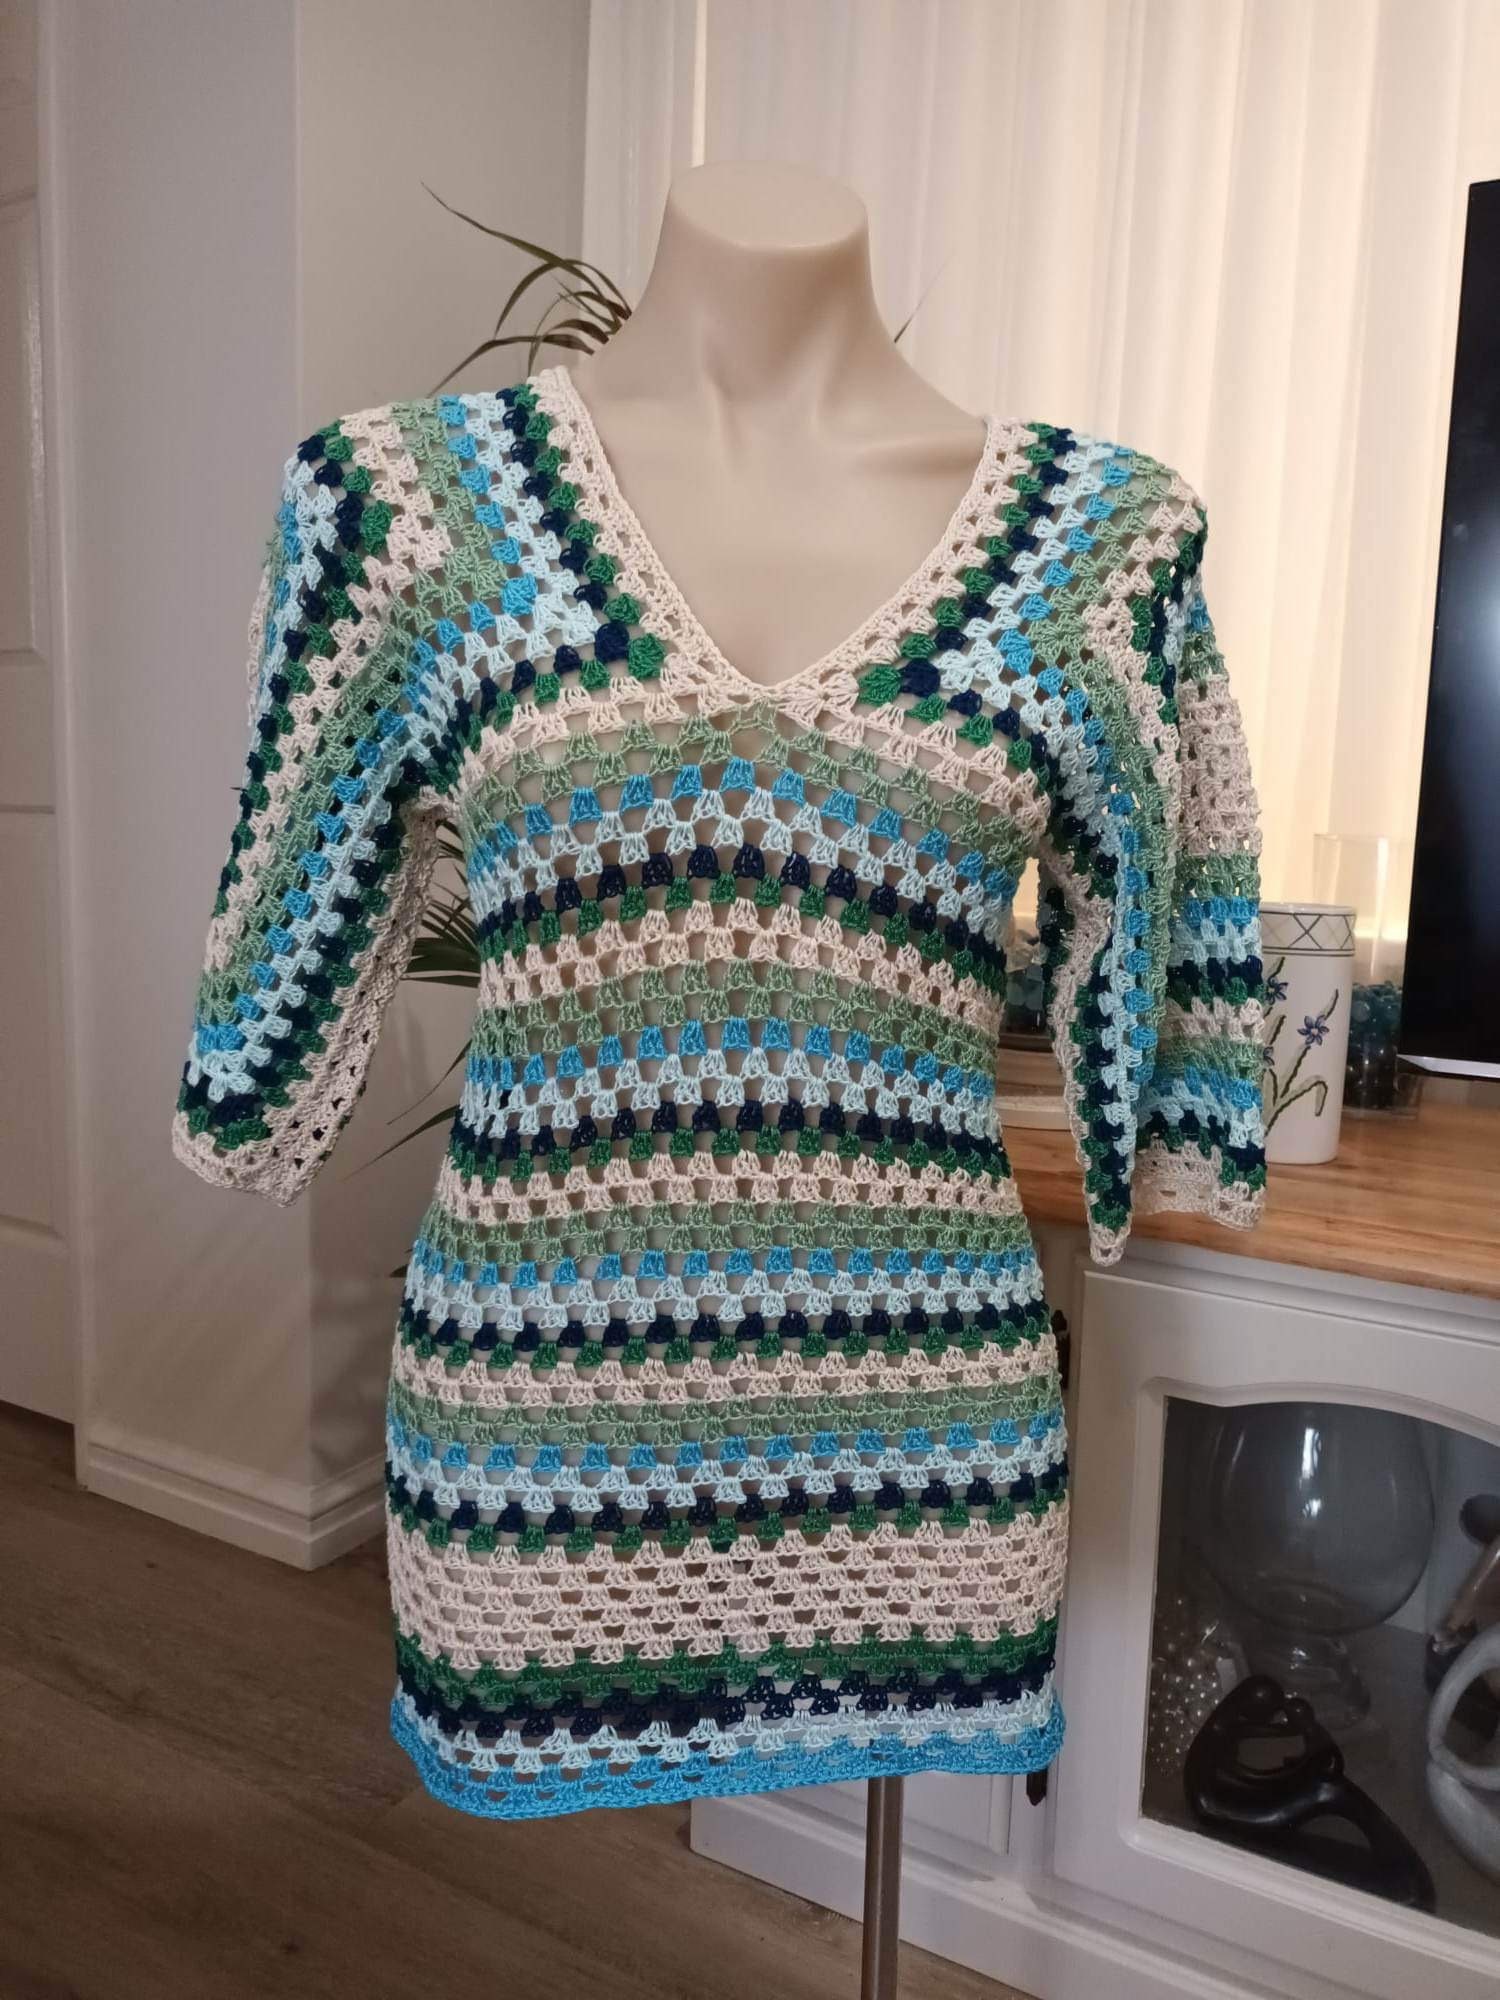 CROCHET DRESS PATTERN / Crochet Beach Dress Pattern / 'simple